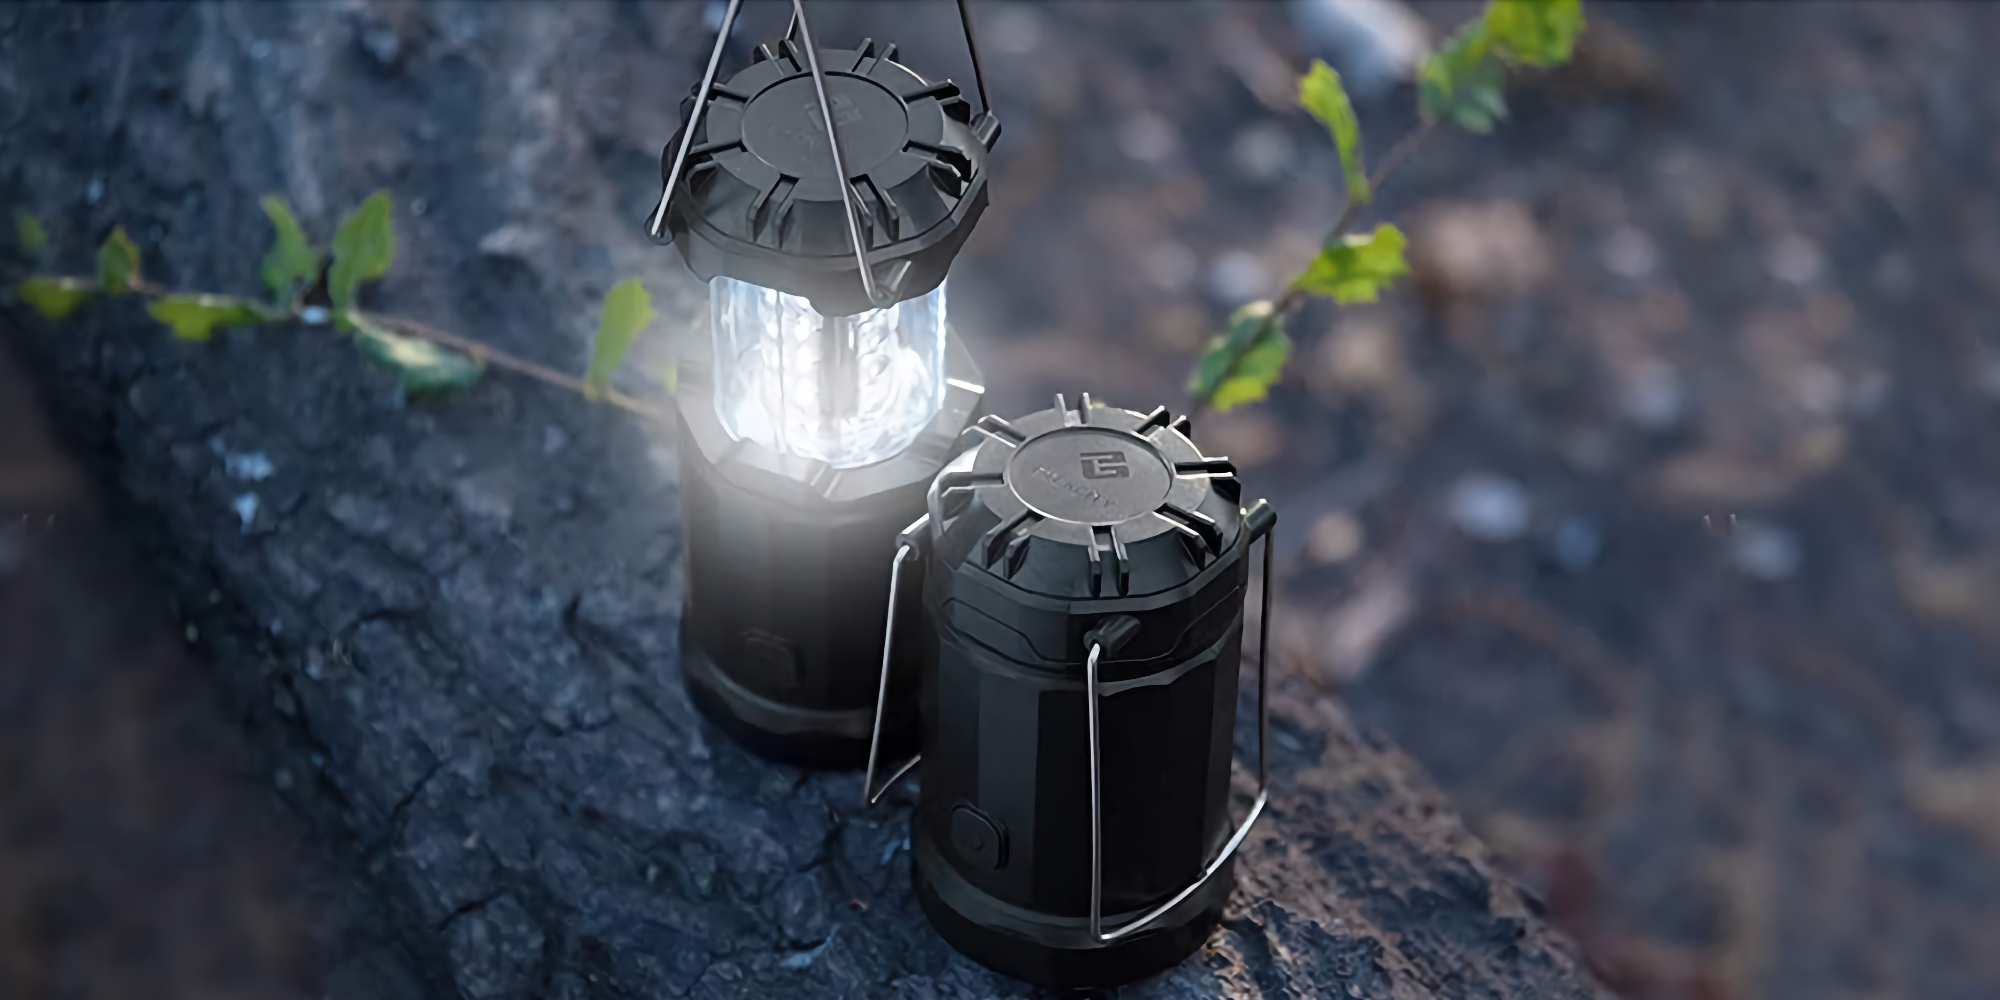 https://9to5toys.com/wp-content/uploads/sites/5/2021/03/Etekcity-LED-Camping-Lantern.jpg